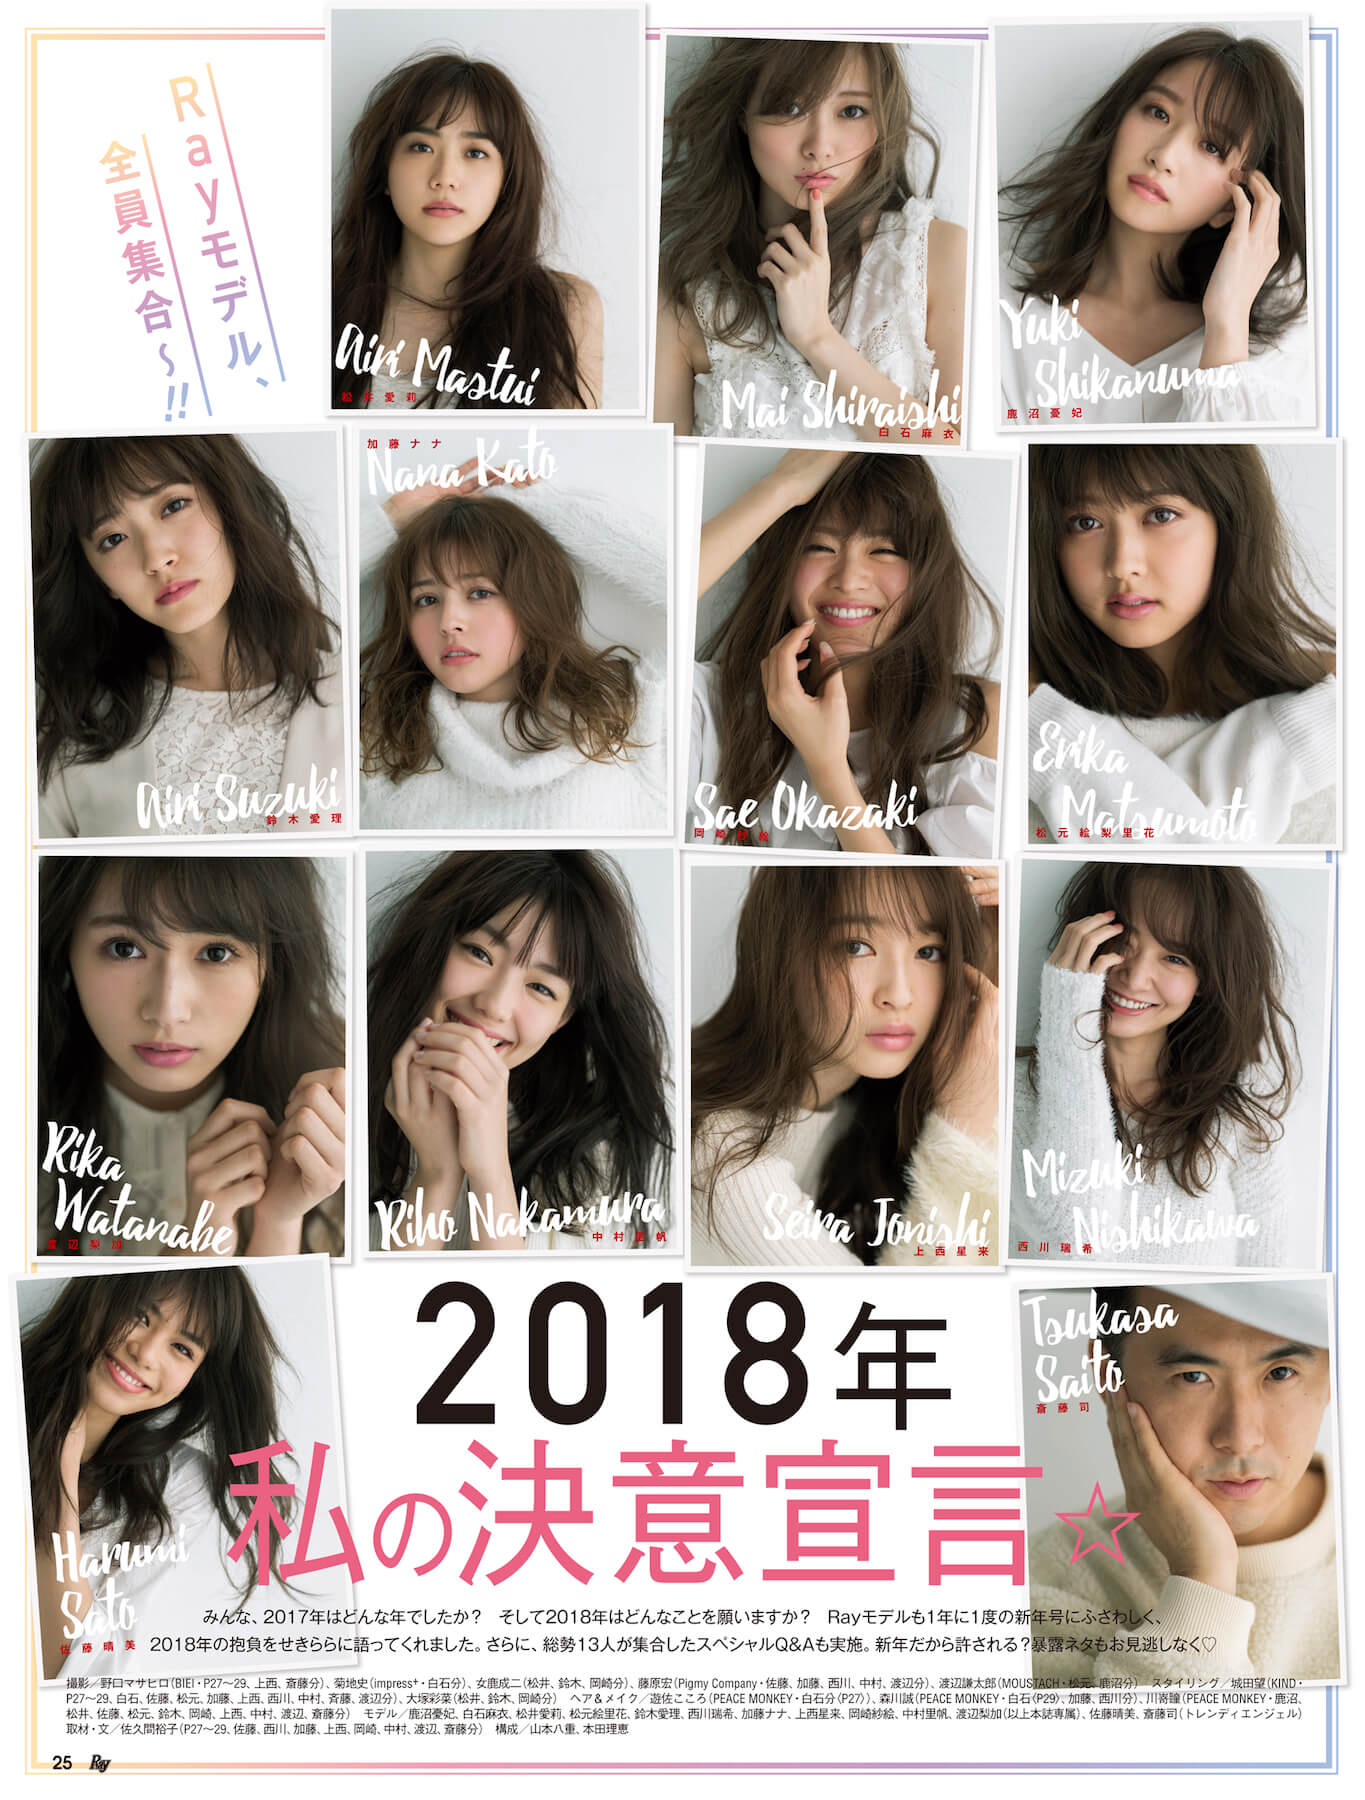 白石麻衣が2018年の決意表明、「Ray」2月号は初のまいやんカレンダーが付録 | Nogizaka Journal